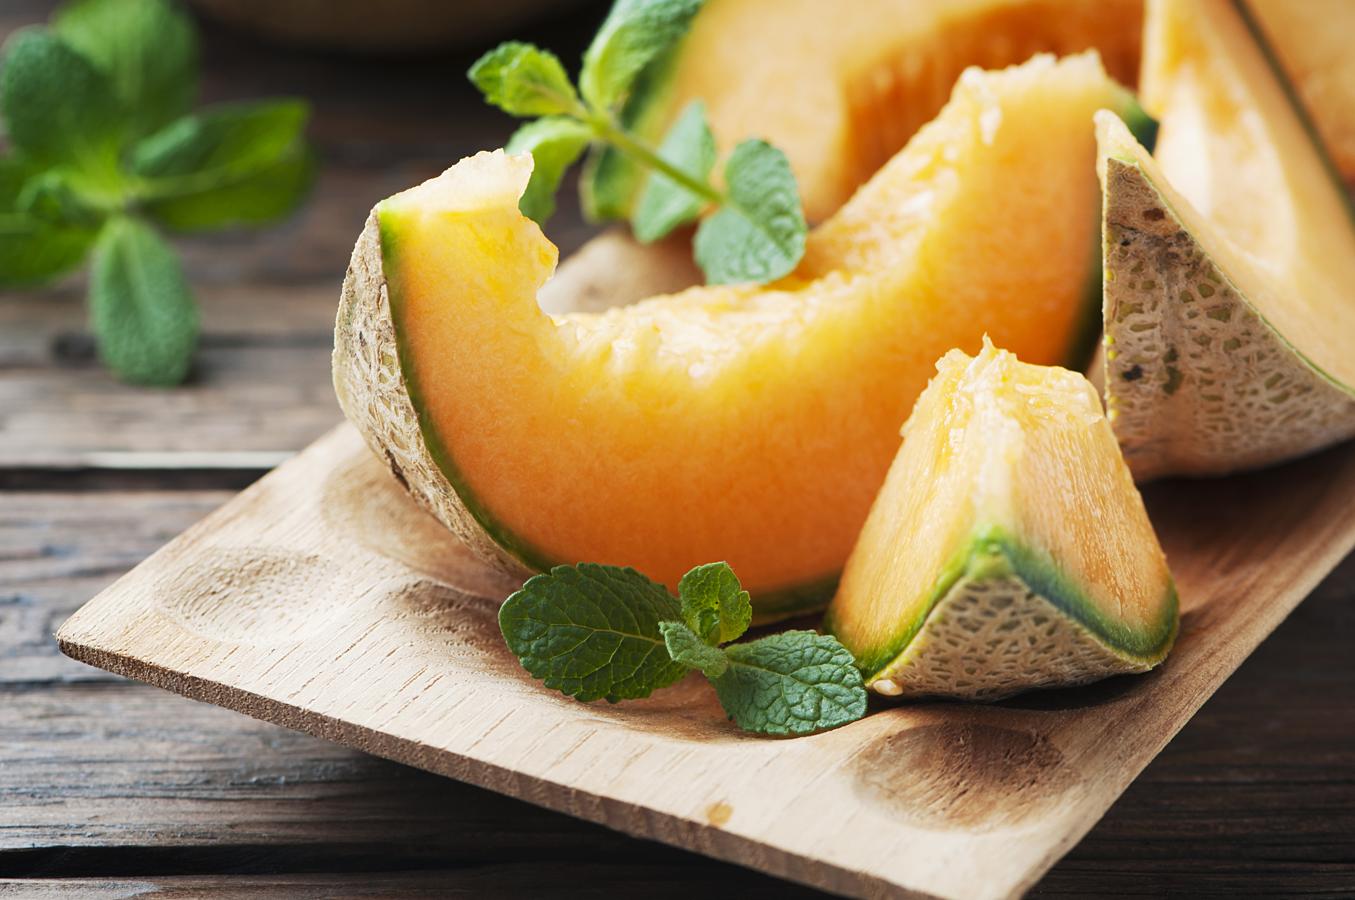 Melón. El melón, fruta de verano por excelencia, es muy rico en agua y, por lo tanto, muy refrescante. A pesar de su sabor dulce, es pobre en azúcares. Tiene un alto contenido en potasio y, en el caso de los melones con la pulpa más amarilla, también es una fuente importante en beta-caroteno o provitamina A. Además, su contenido en vitamina C es importante.